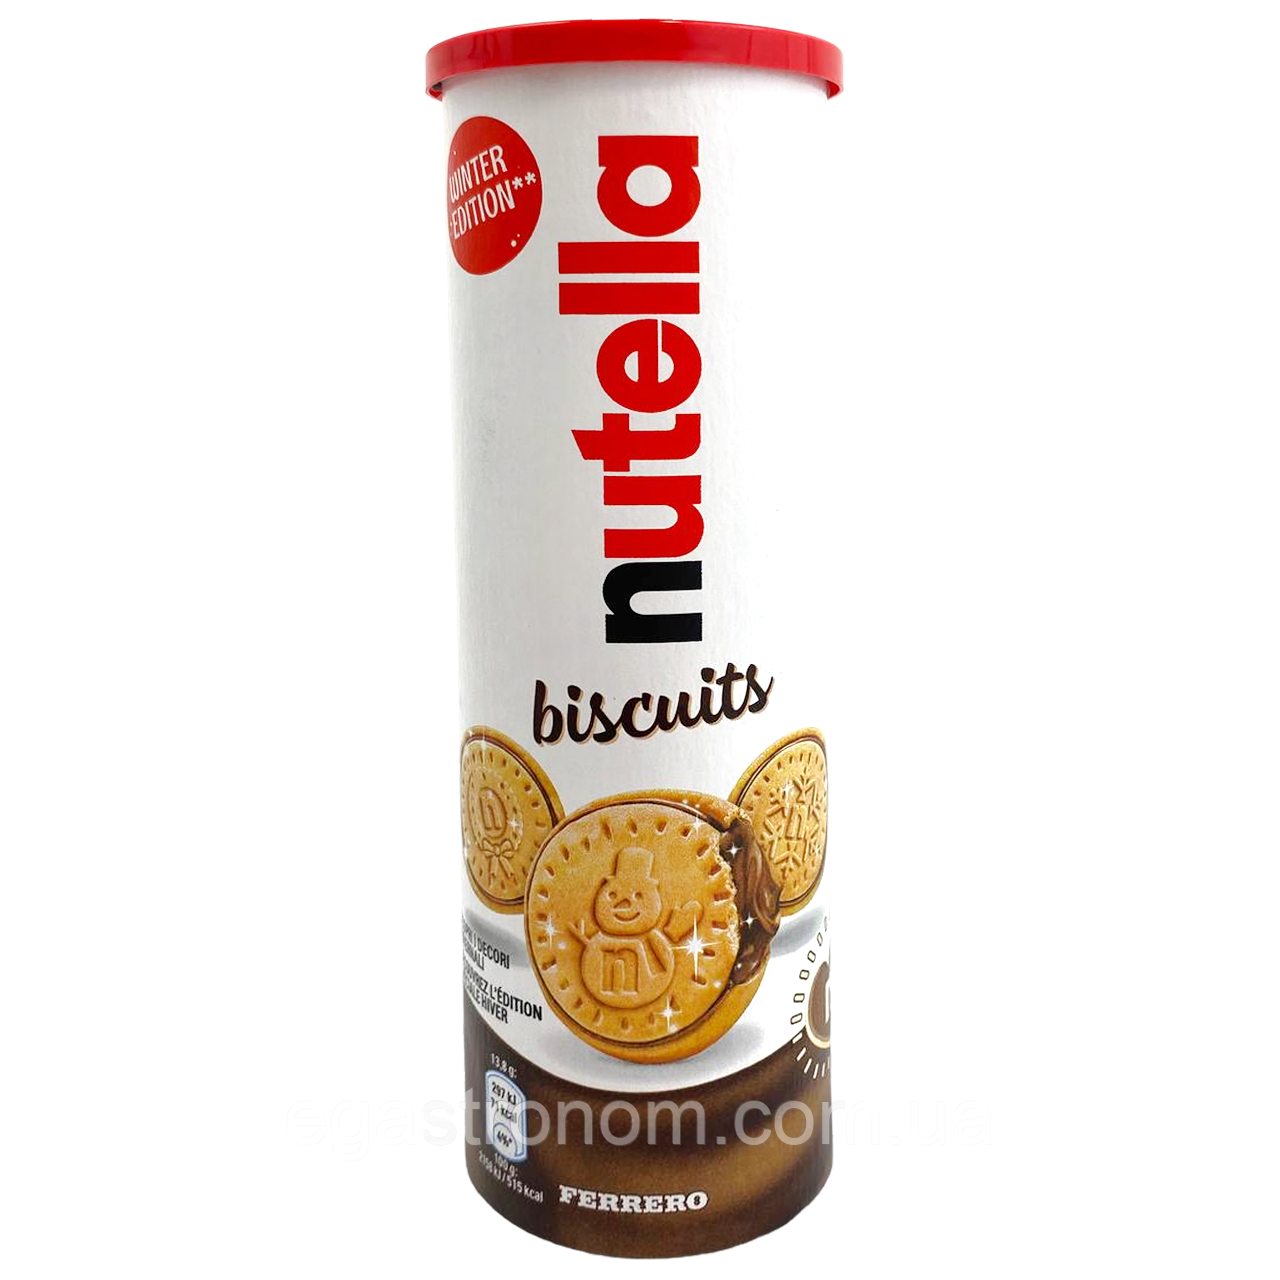 Печиво Нутелла Nutella biscuits 166g 20шт/ящщ (Код: 00-00015547)